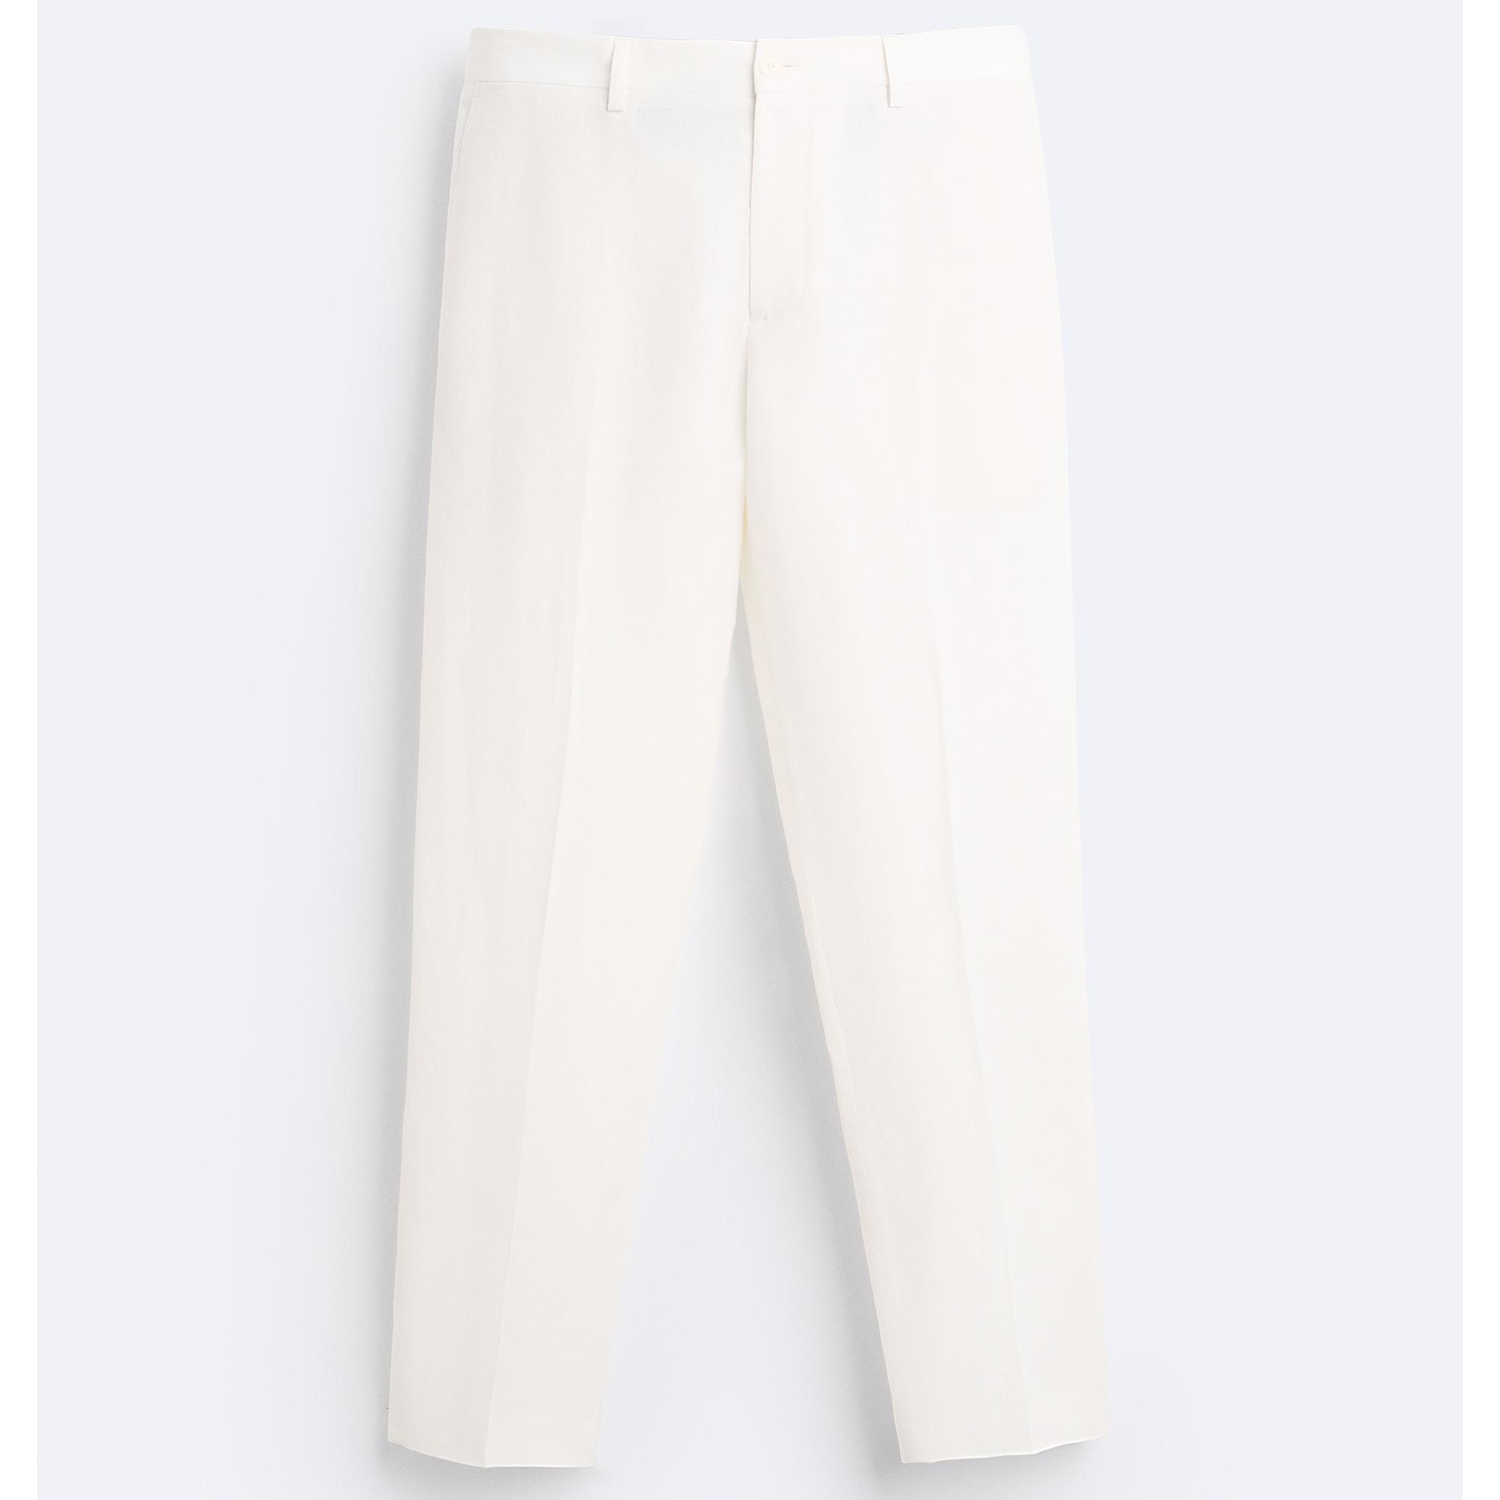 Брюки Zara Zara 100% Linen Suit, белый брюки tu классического кроя 42 44 размер новые